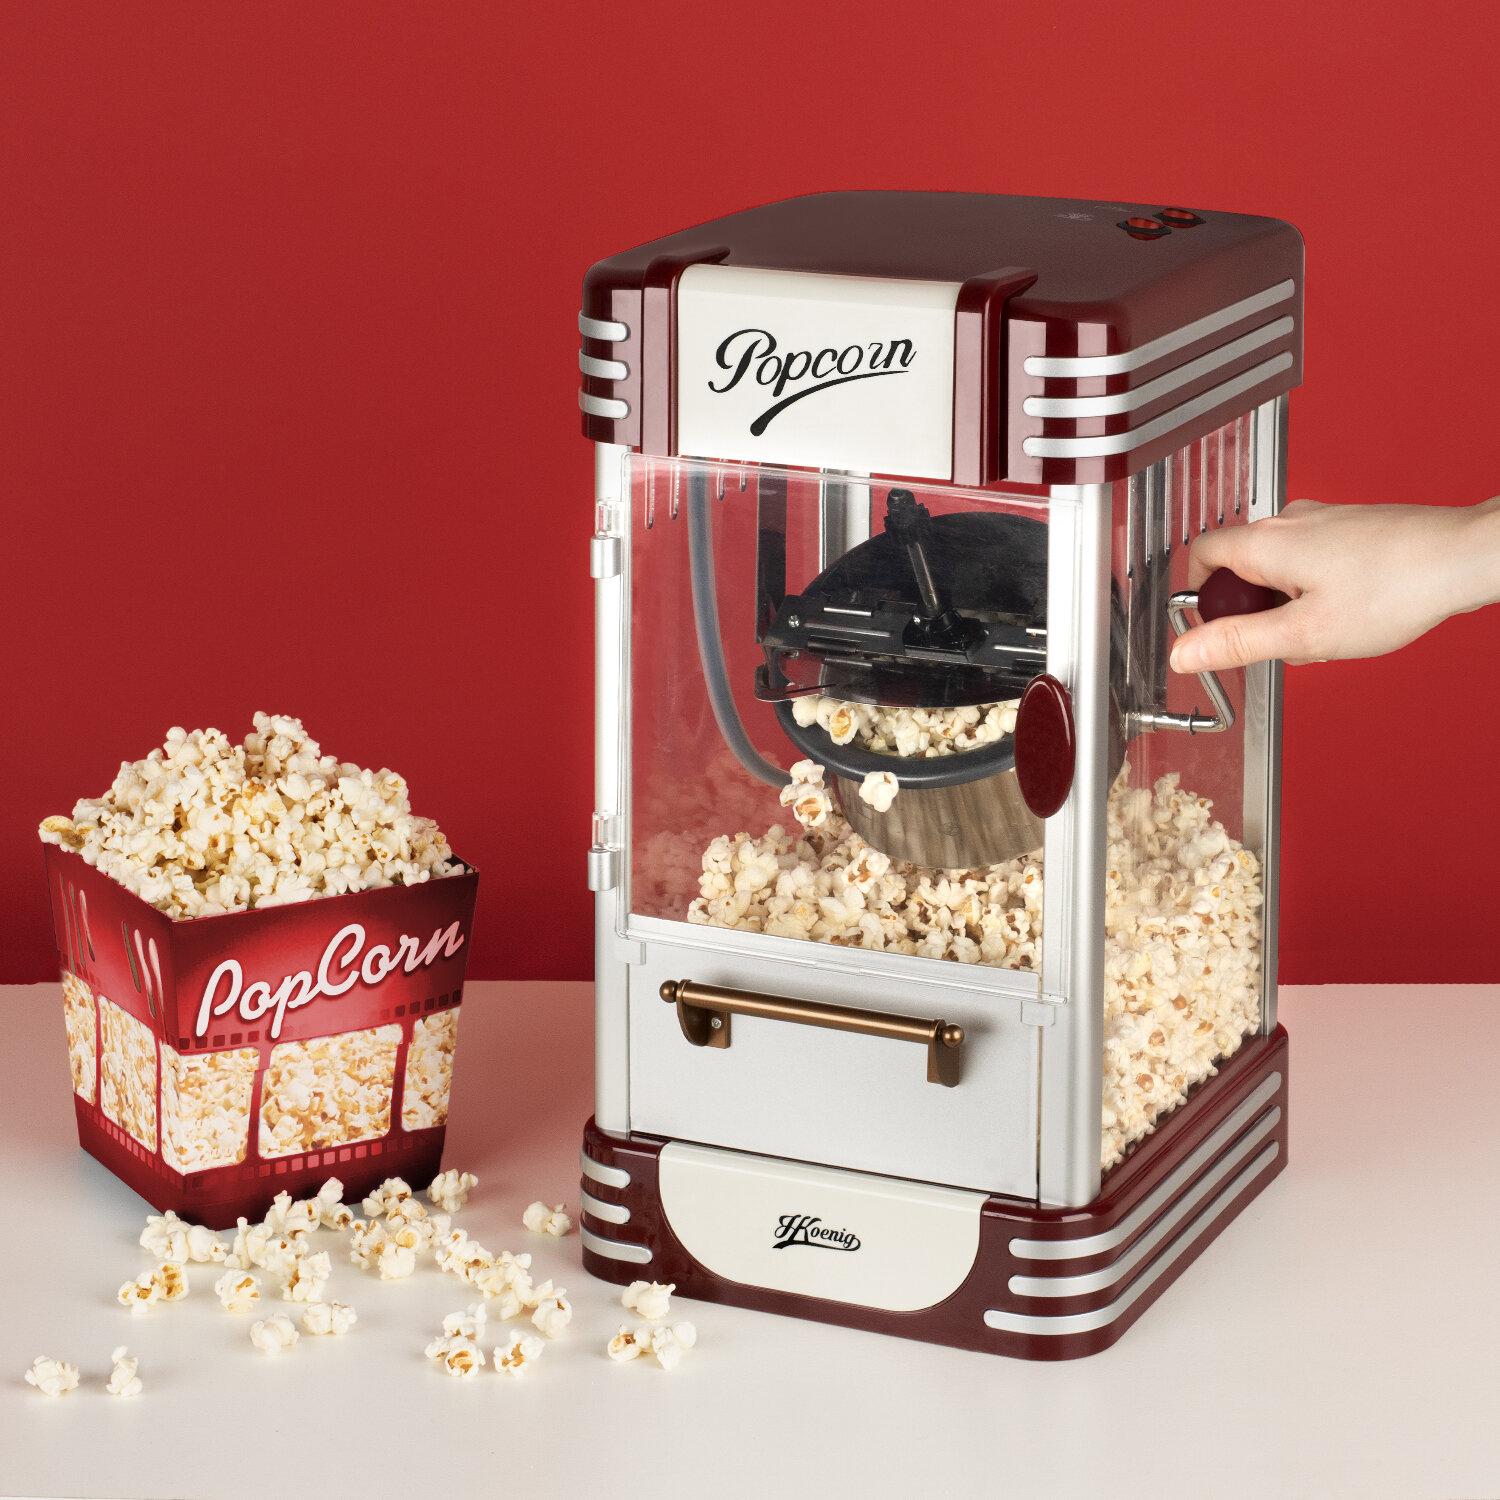 I nostri prodotti > cucina conviviale > Macchina per popcorn POP330 :  Koenig - IT